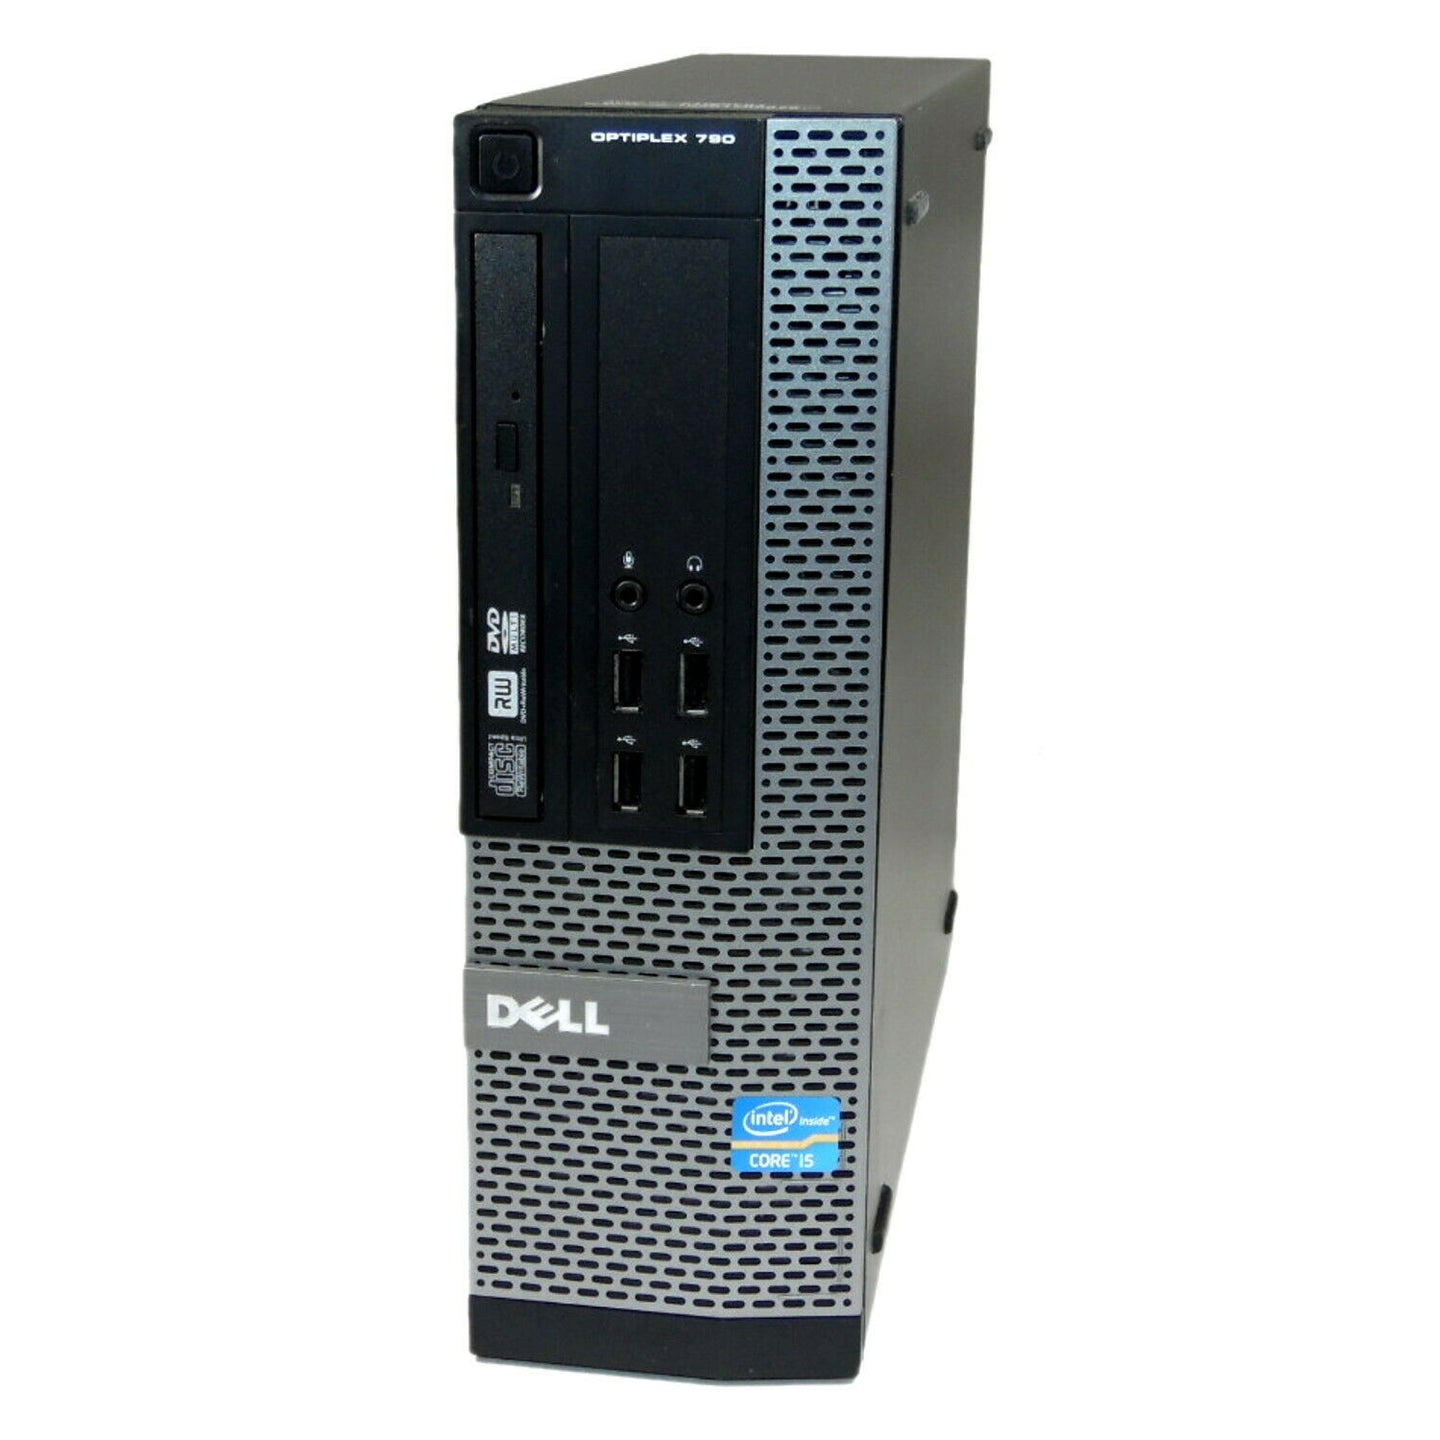 Dell Optiplex 790 SFF PC Computer Intel i3-2100 4GB Ram 500GB HDD Wind10 DVDRW